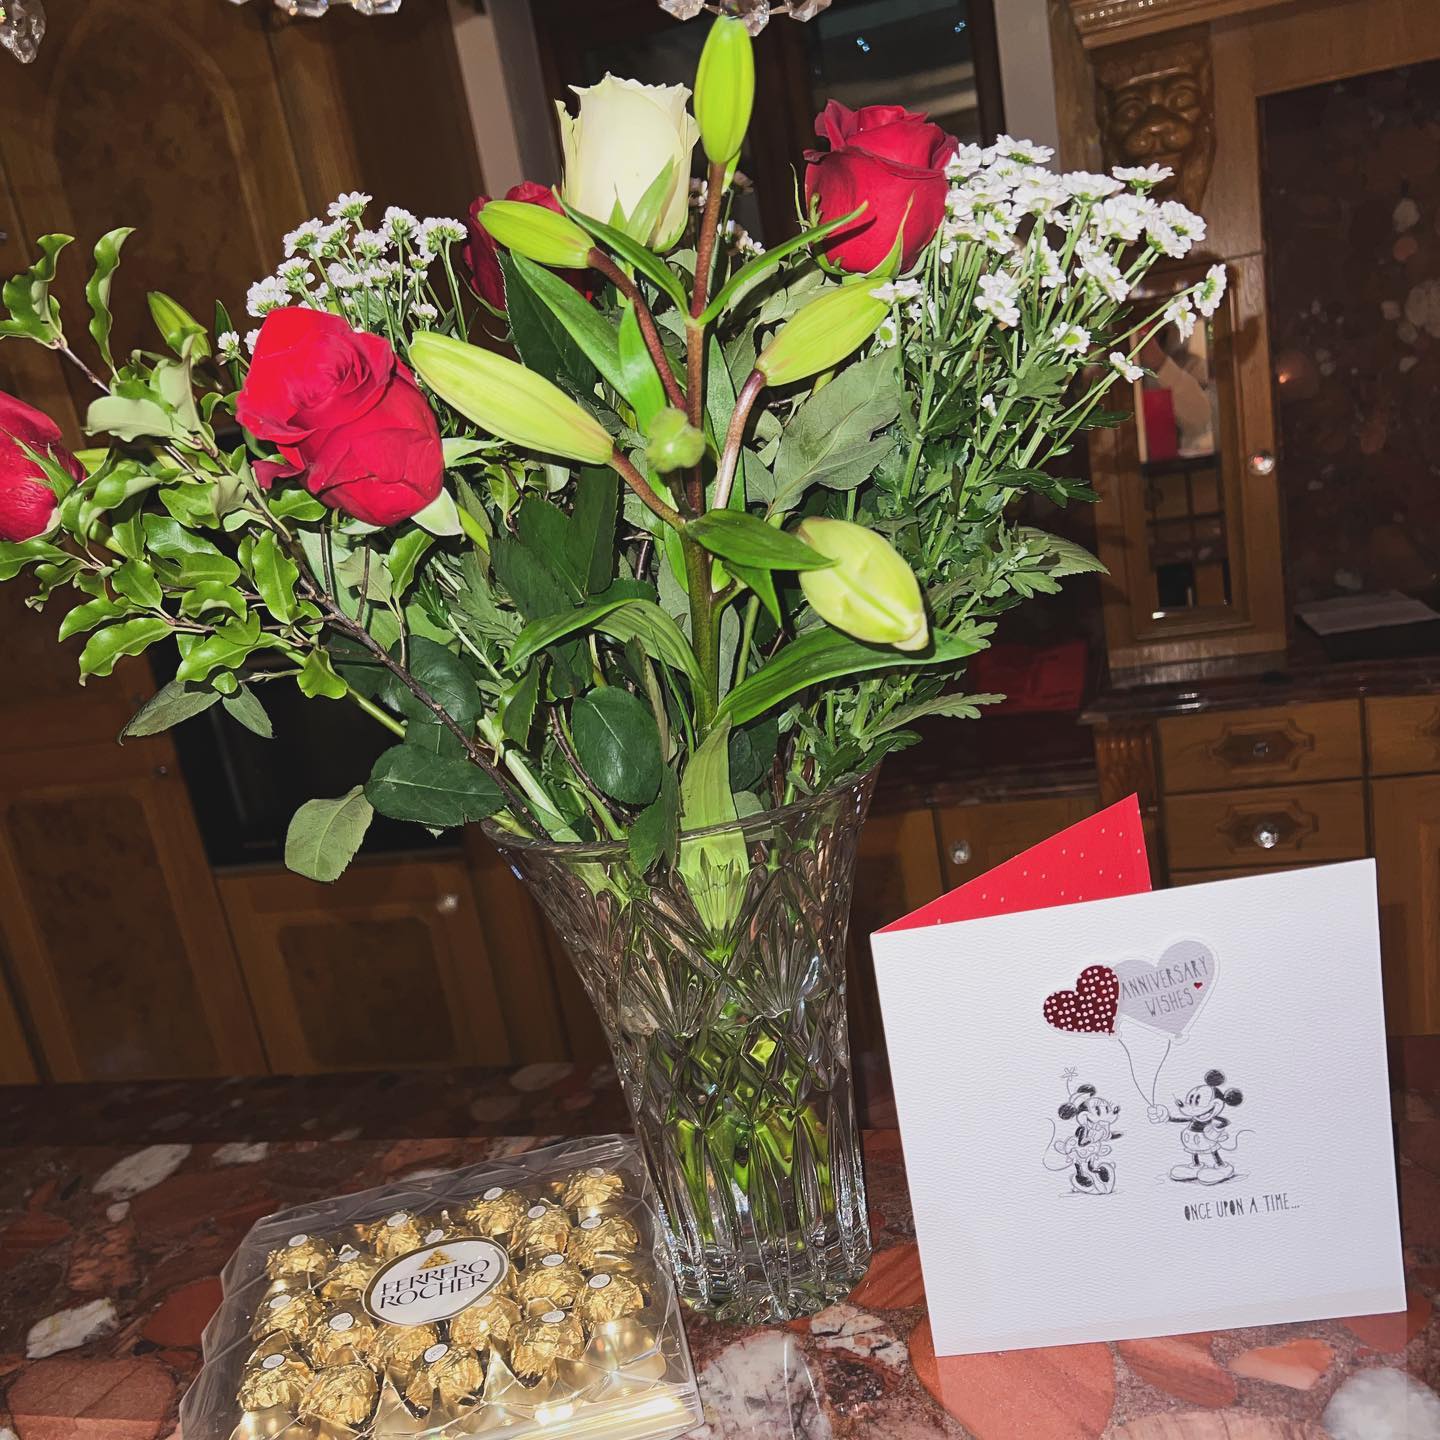 Tyson kaufte Pariser Blumen und eine Schachtel Pralinen von Ferrero Rocher